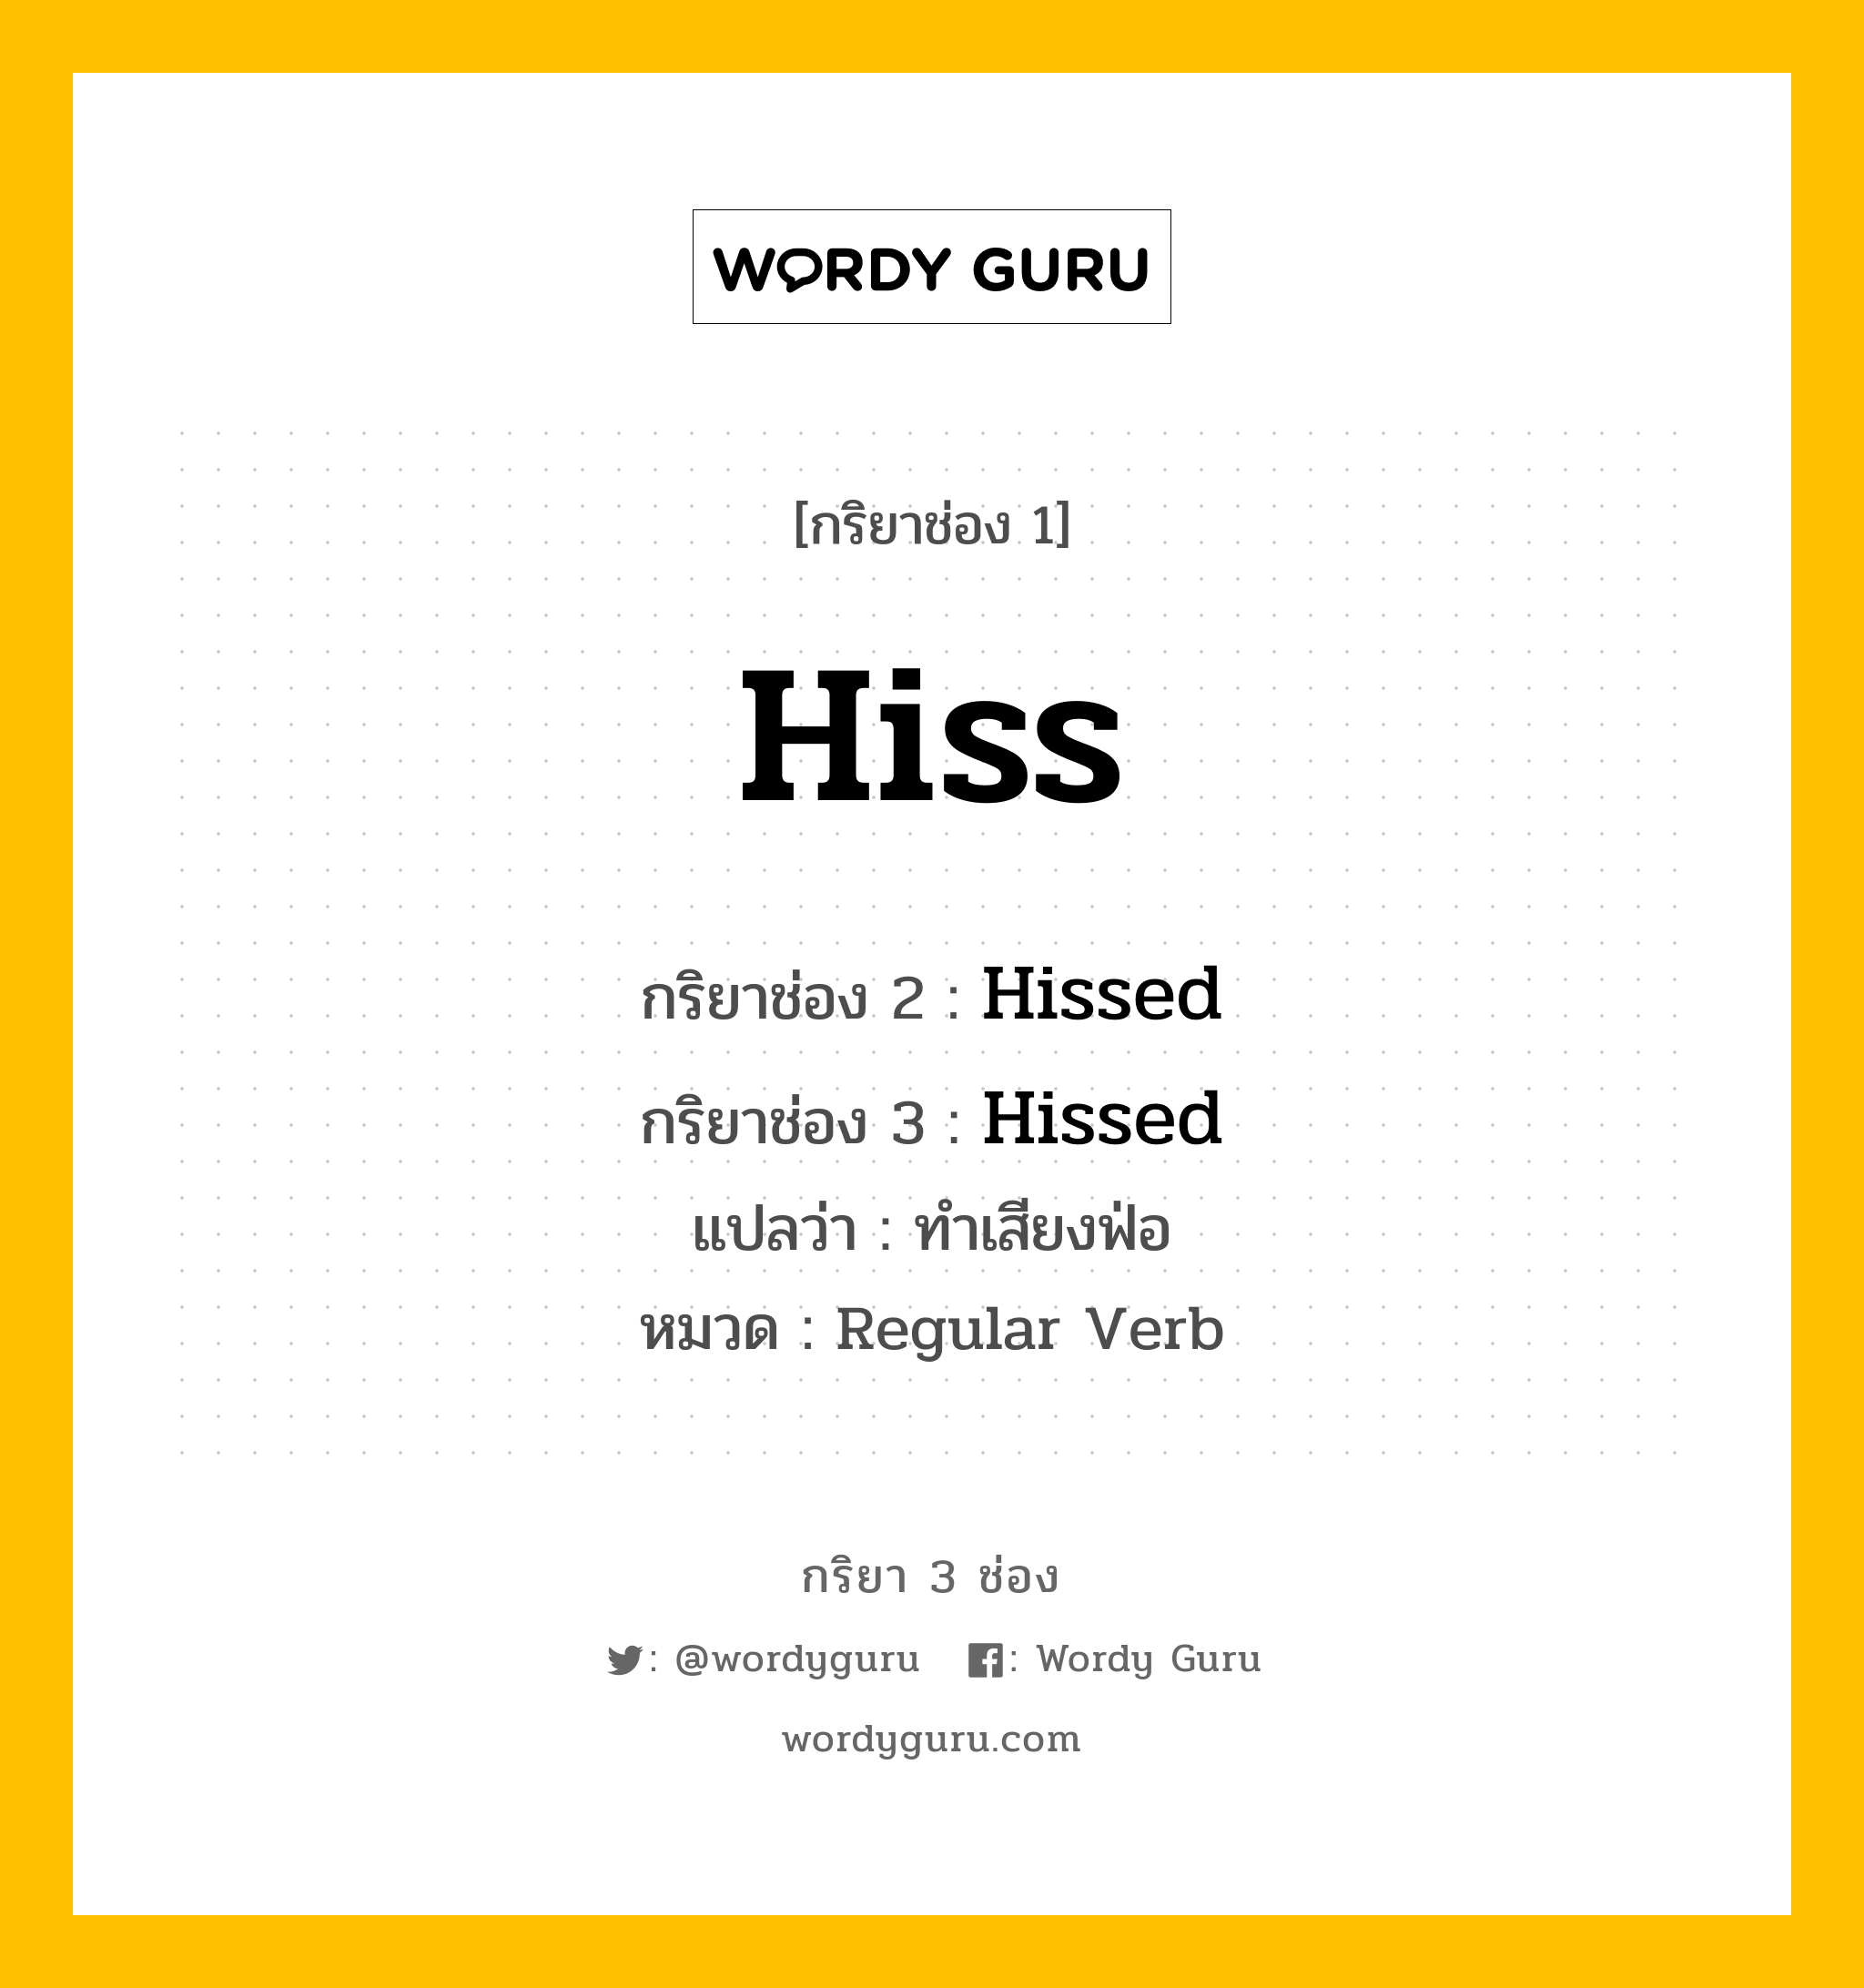 กริยา 3 ช่อง ของ Hiss คืออะไร? มาดูคำอ่าน คำแปลกันเลย, กริยาช่อง 1 Hiss กริยาช่อง 2 Hissed กริยาช่อง 3 Hissed แปลว่า ทำเสียงฟ่อ หมวด Regular Verb หมวด Regular Verb